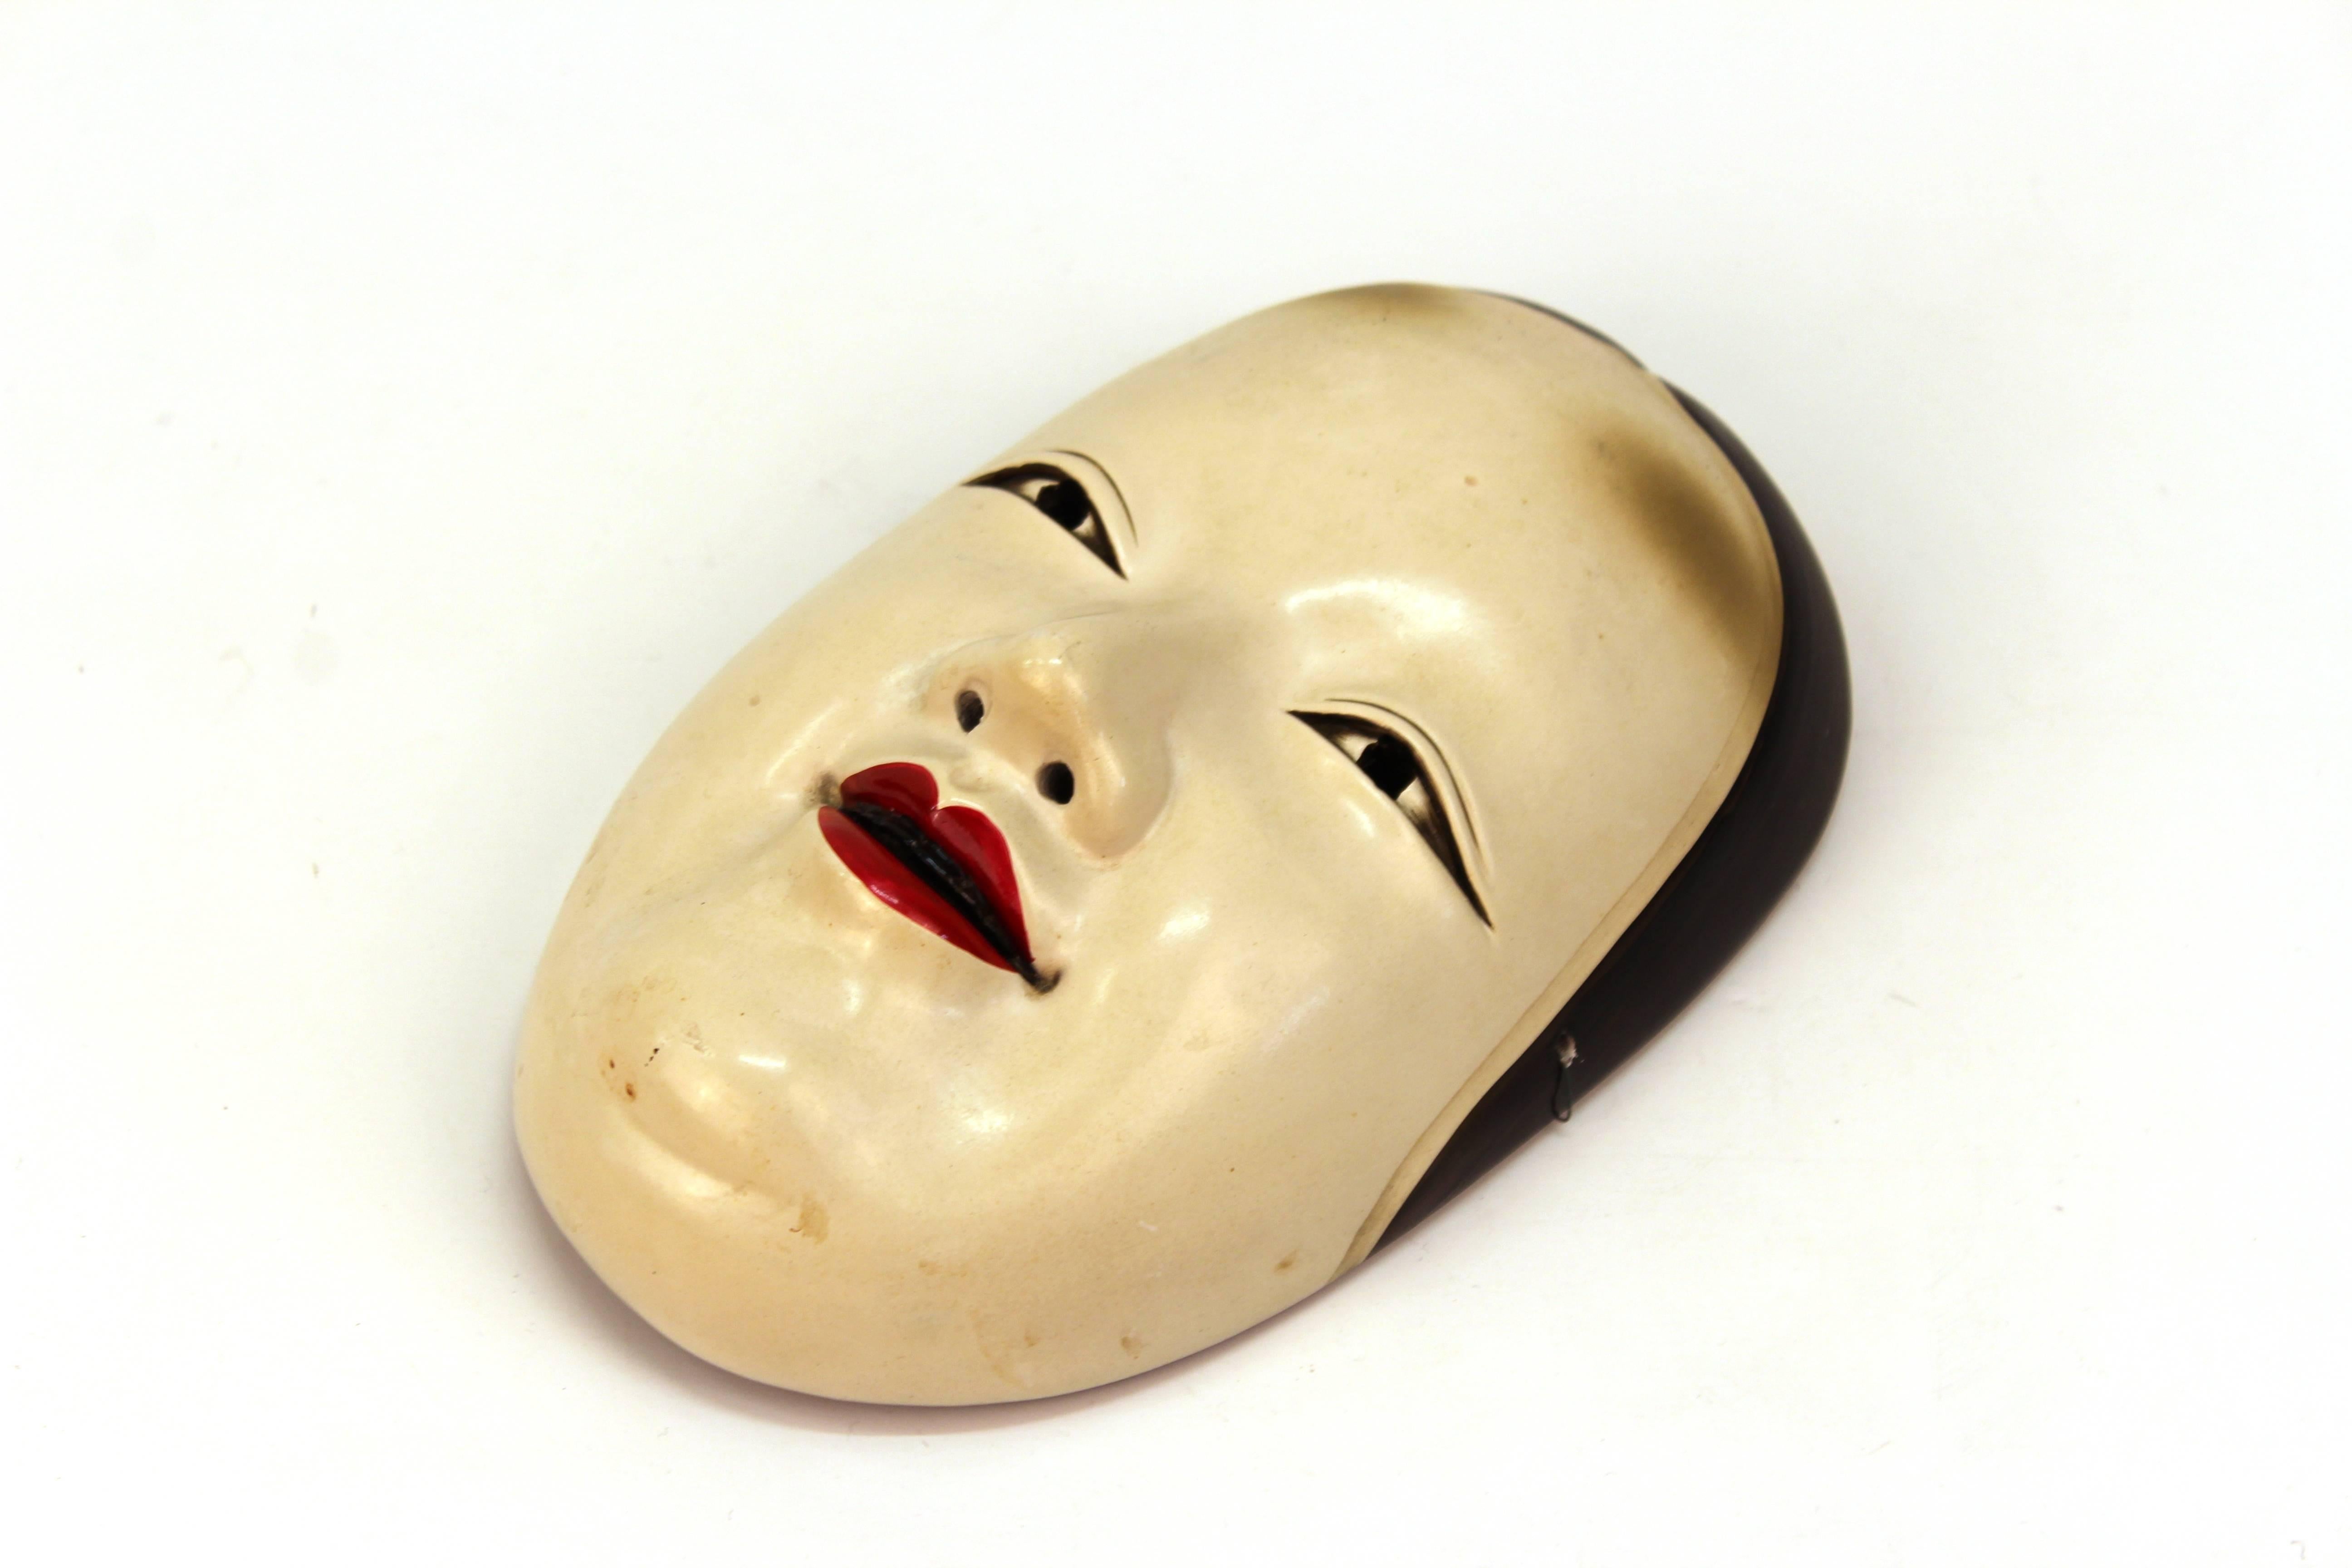 Eine geschnitzte Holzmaske des japanischen Noh-Theaters, die ein junges Mädchen namens Ko-Omote darstellt. Die Maske wurde zu Beginn des 20. Jahrhunderts hergestellt und ist in einem hervorragenden Zustand.